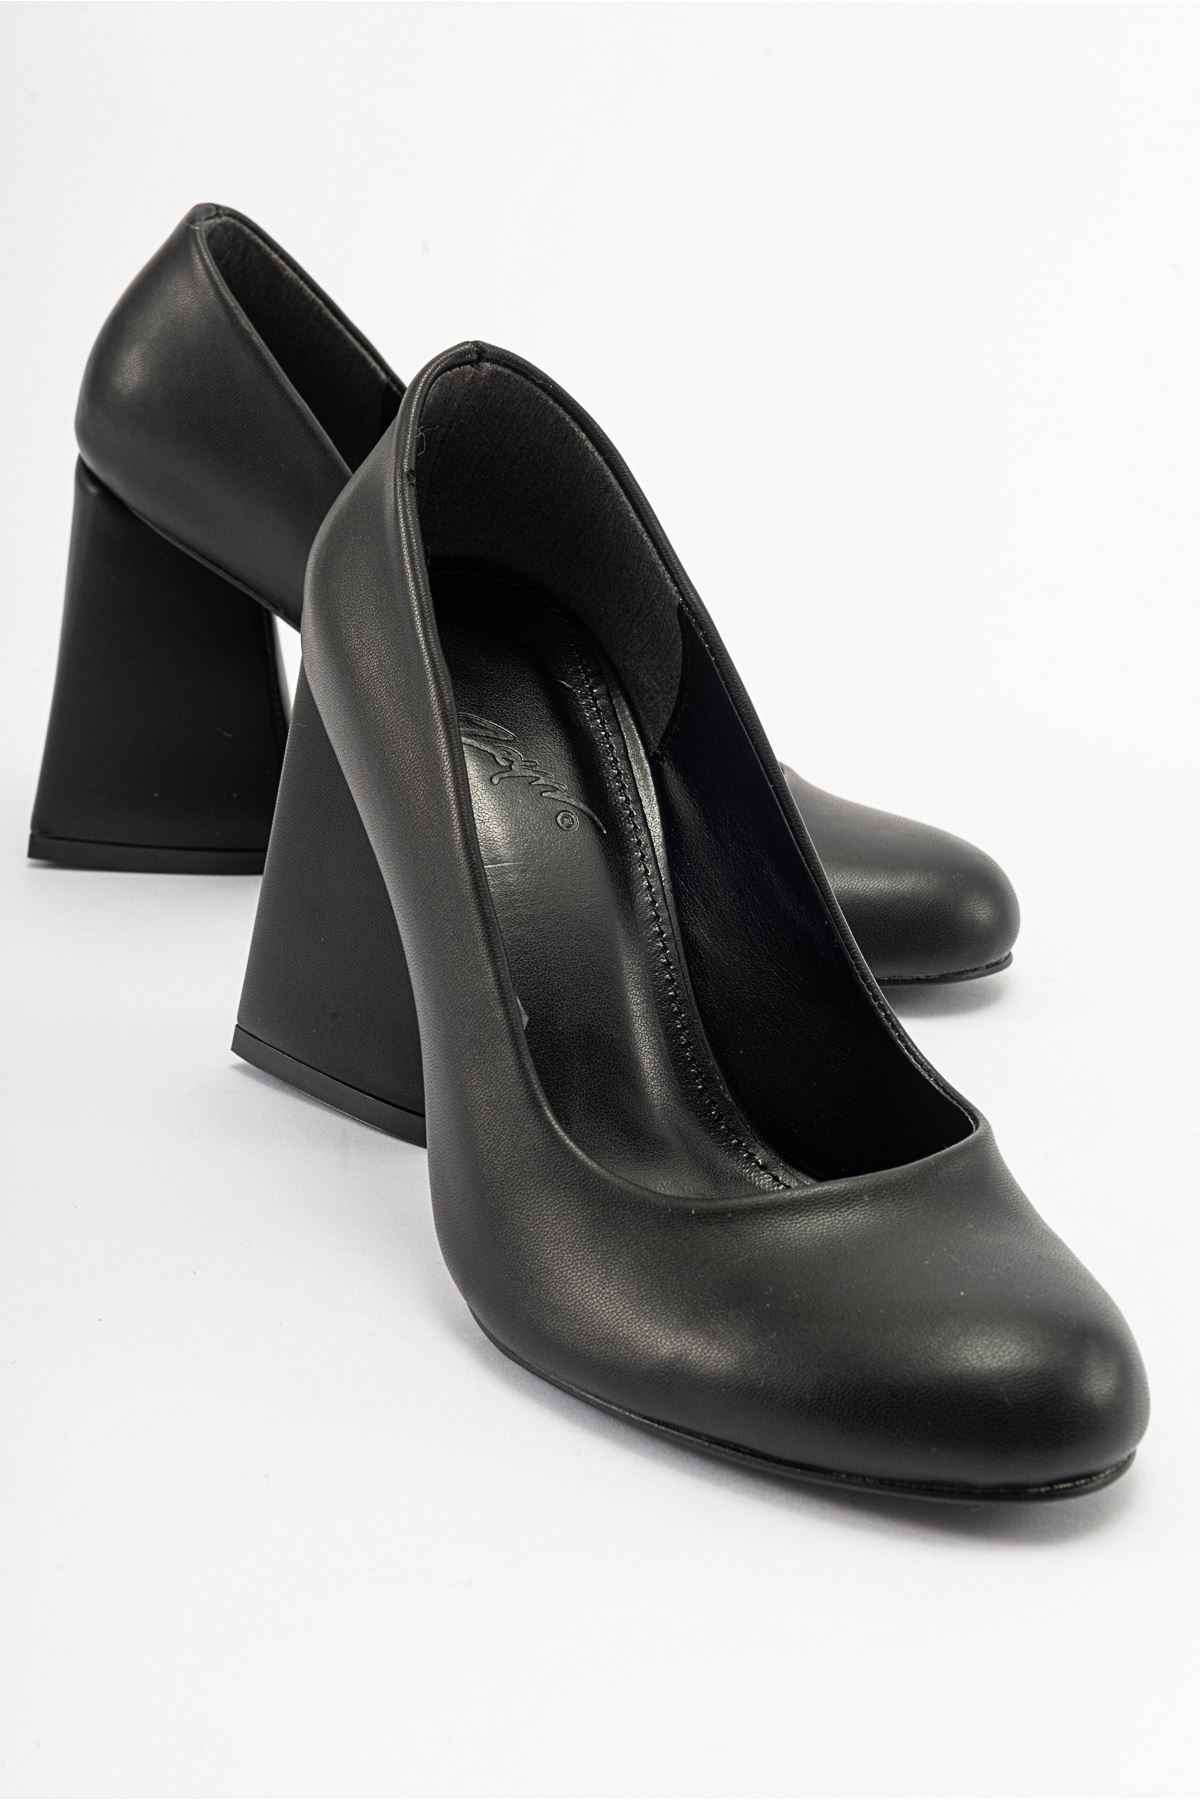 Akira Kadın Topuklu Ayakkabı Siyah 